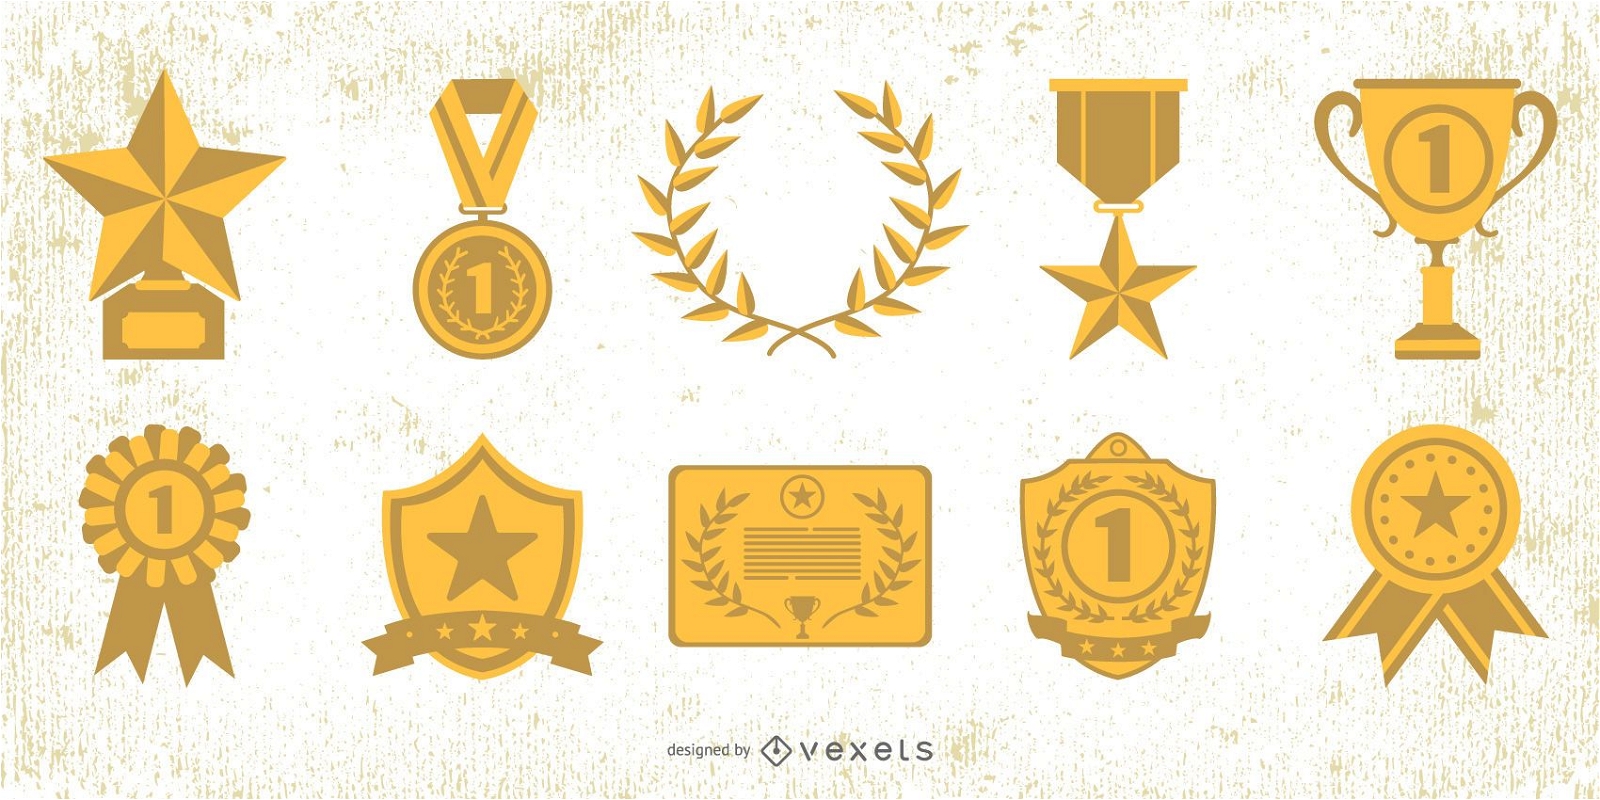 Descarga Vector De Paquete De Elementos De Premios De La Medalla